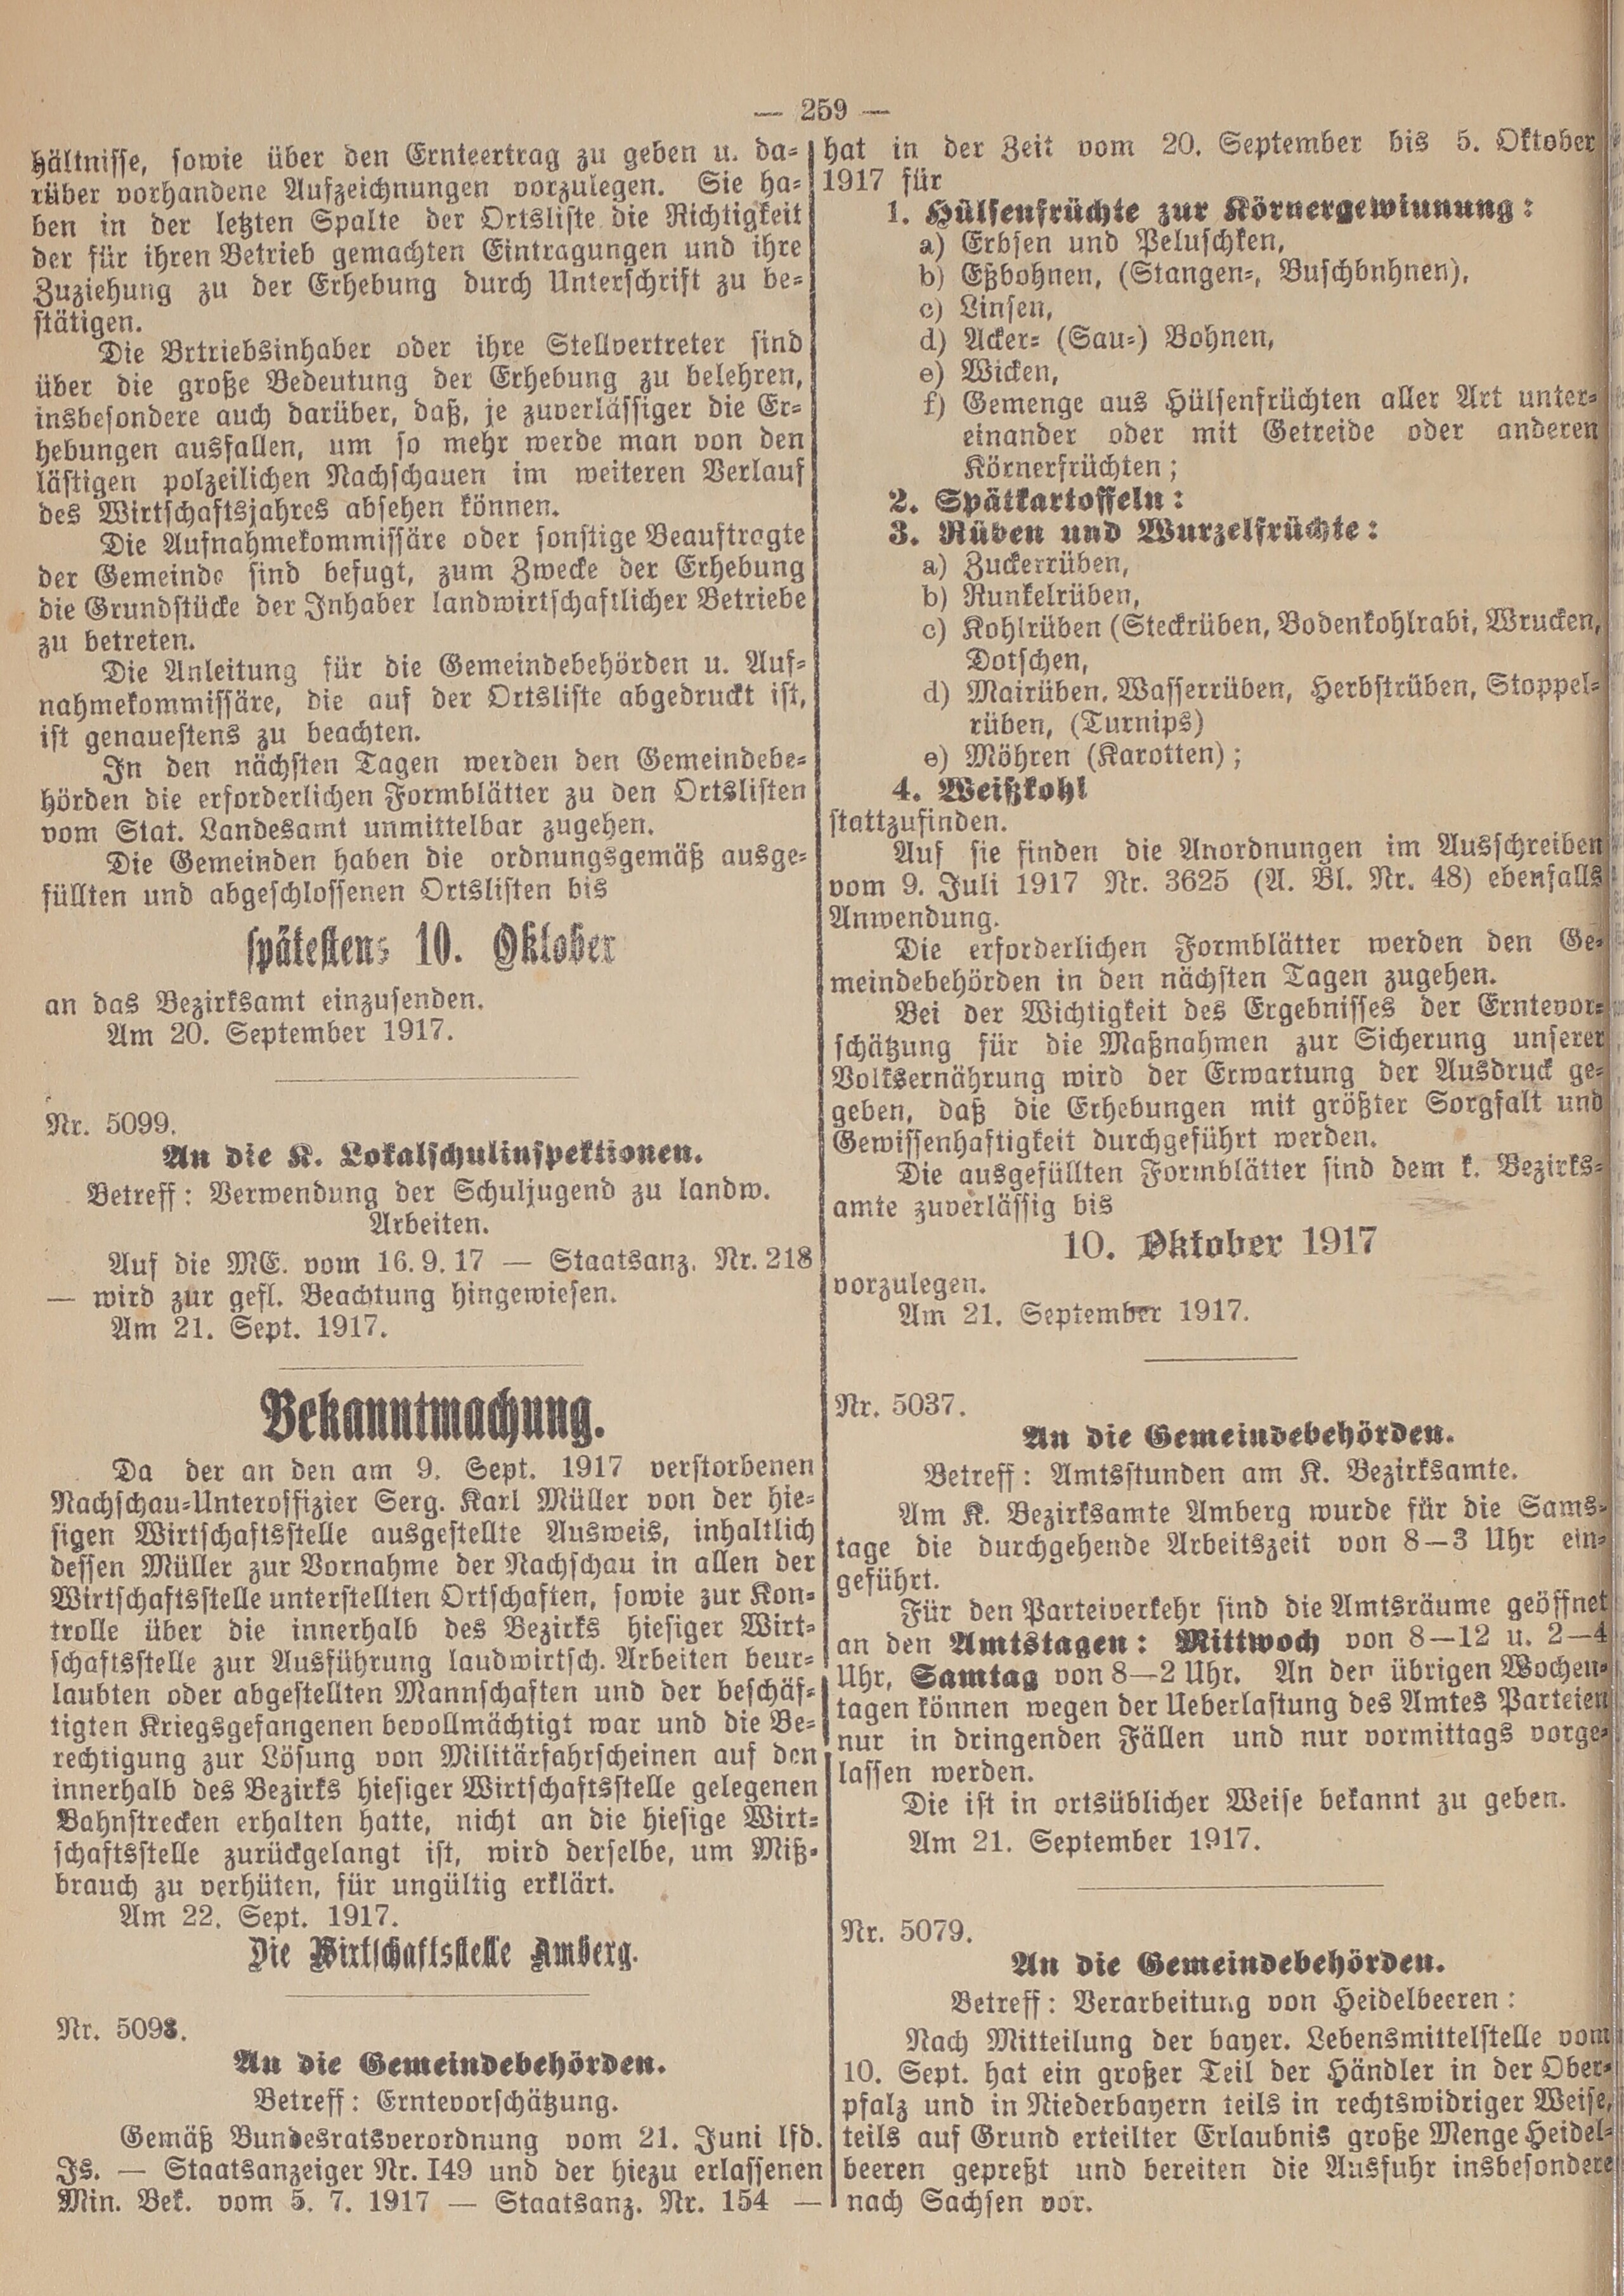 2. amtsblatt-amberg-1917-09-26-n67_2510